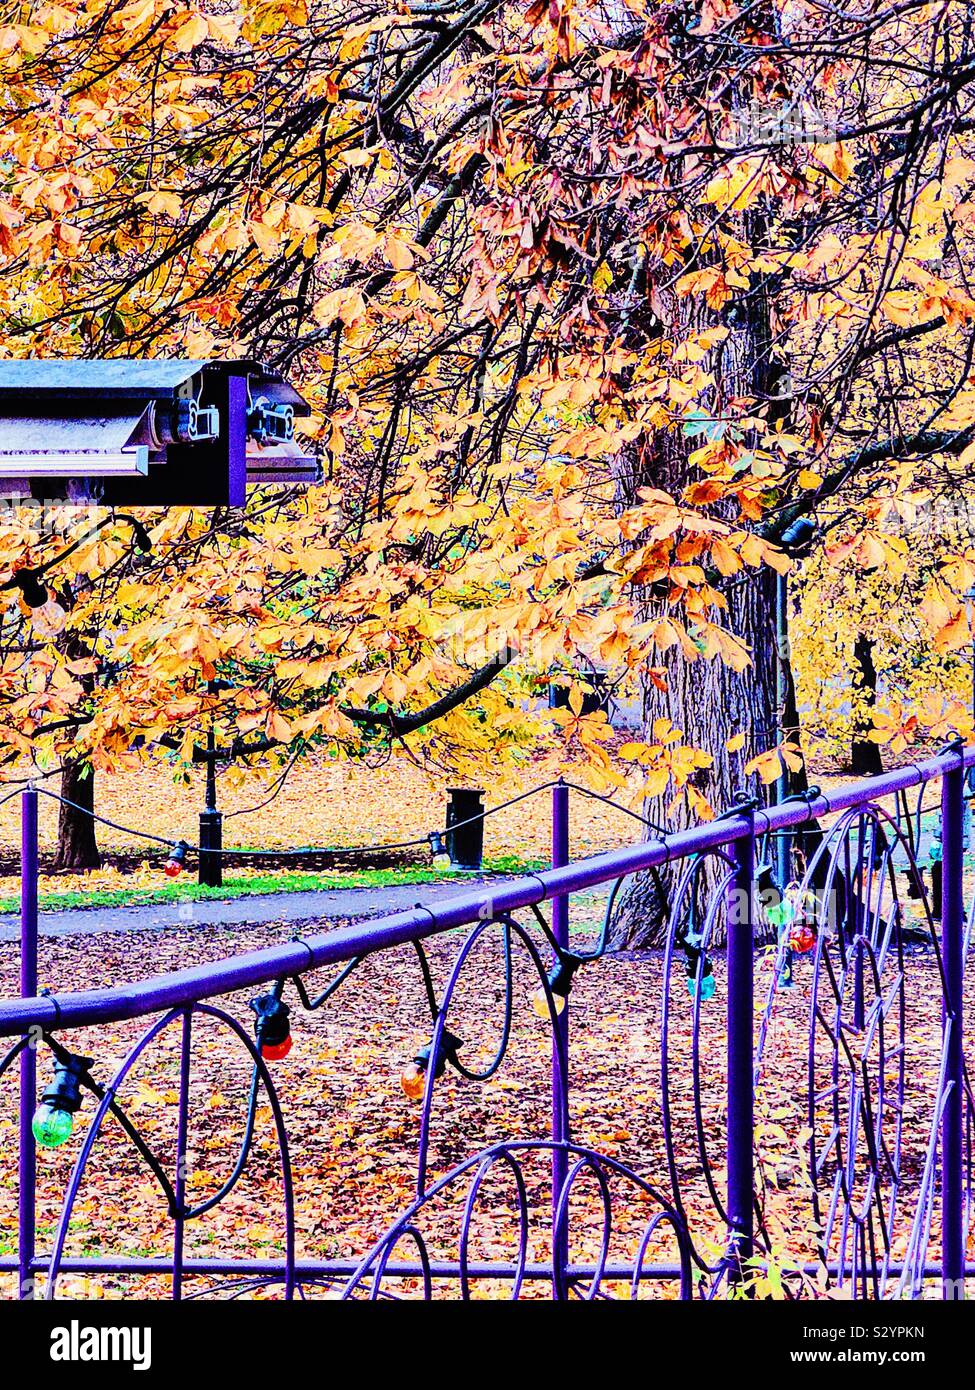 Scène d'automne avec balustrade, voyants de couleur pourpre et une partie de l'auvent, Suède Banque D'Images